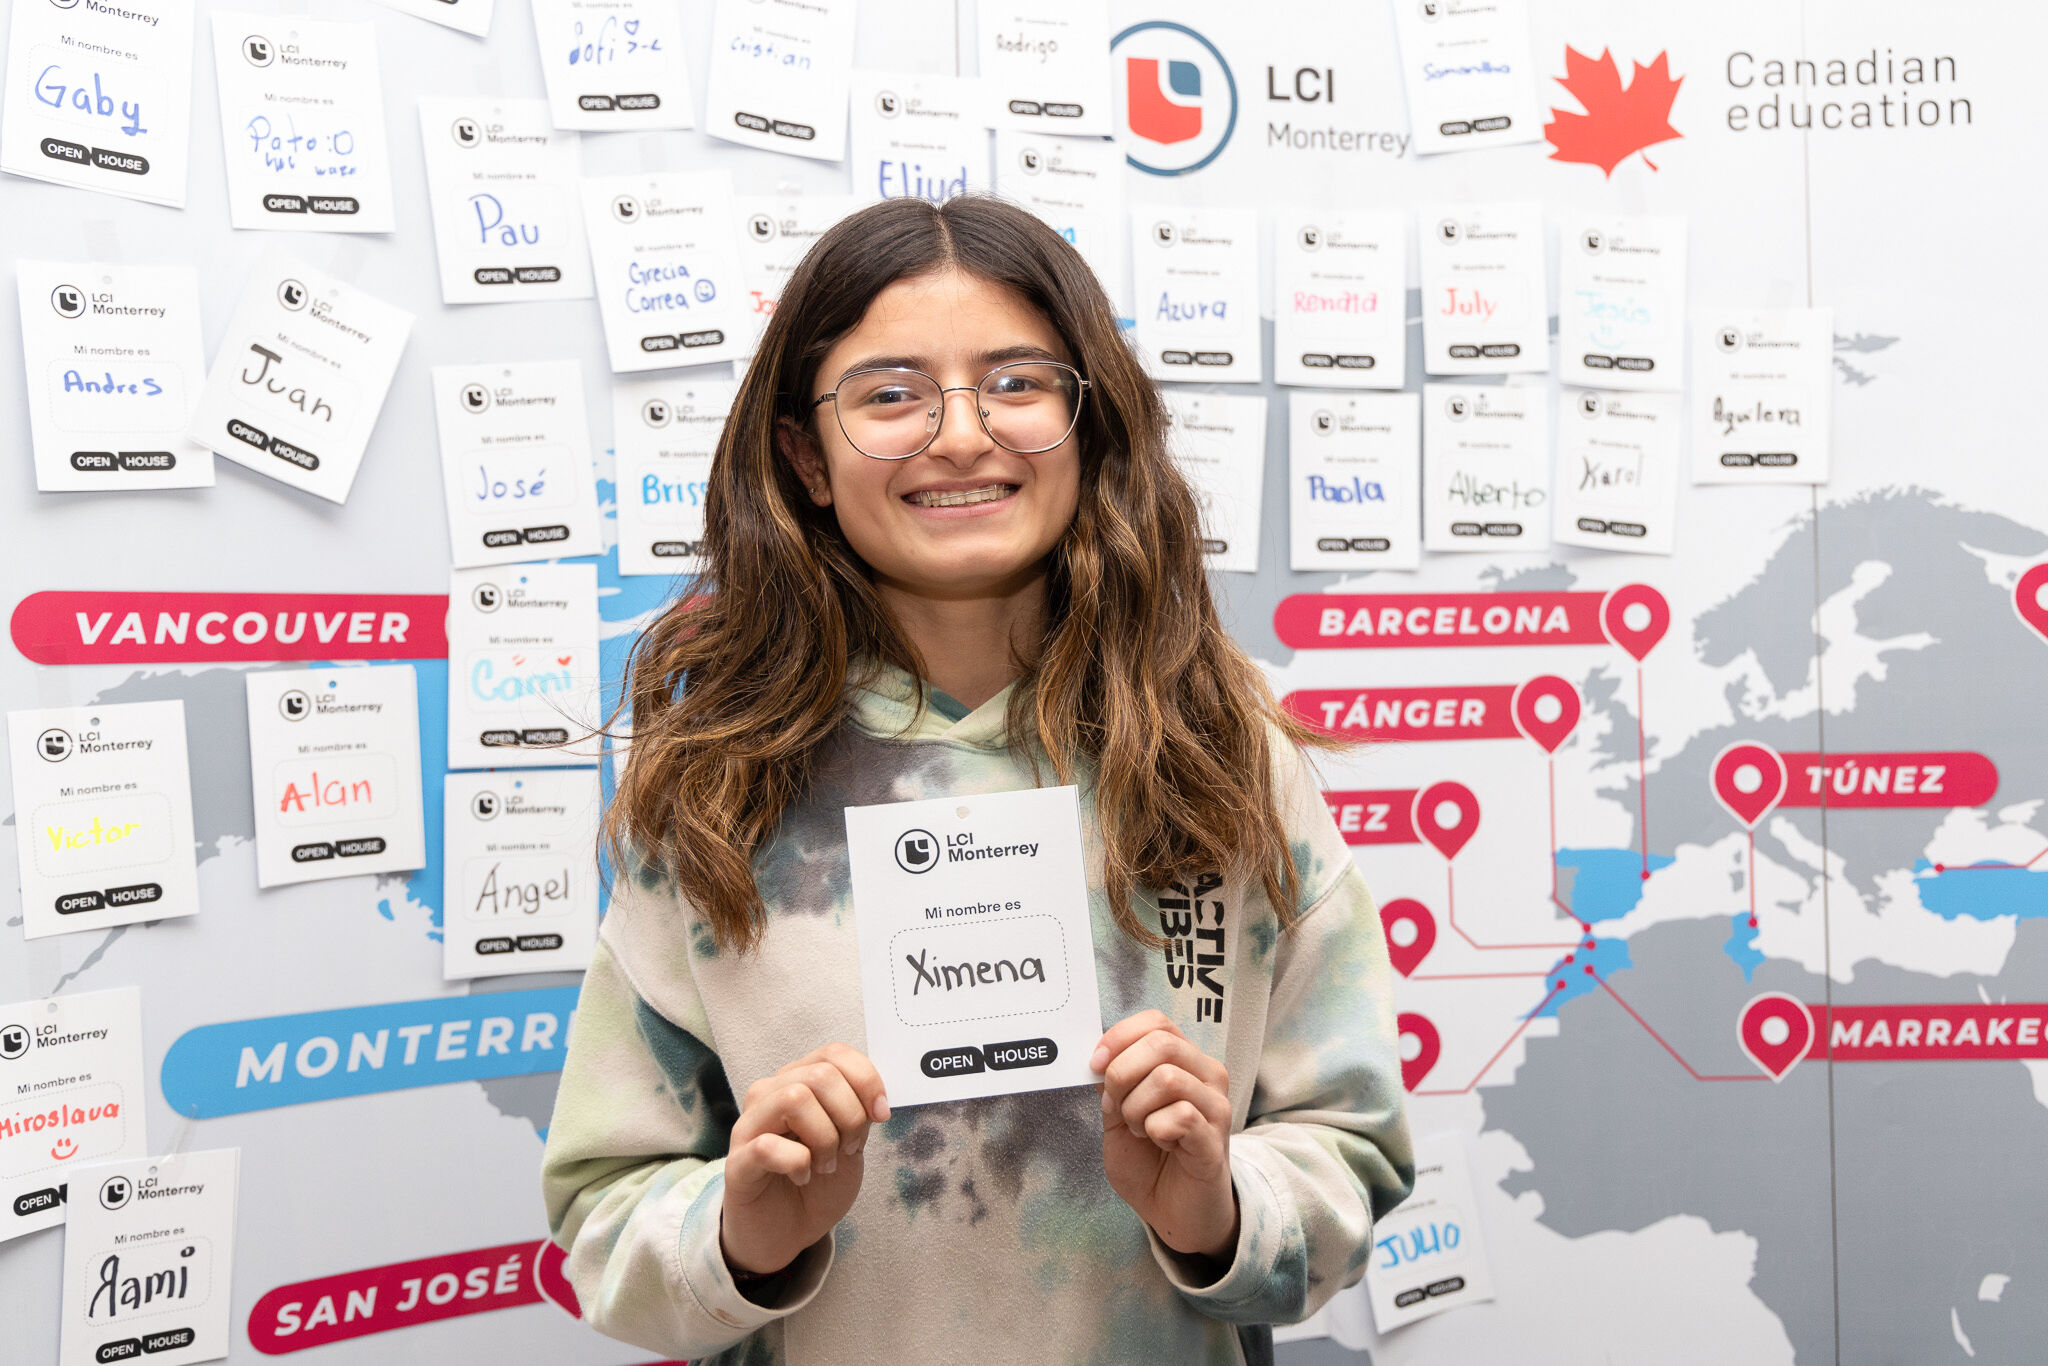 Una joven alegre sostiene su etiqueta de nombre en una jornada de puertas abiertas de una escuela internacional, con un mapa mundial y nombres de ciudades en el fondo que indican varios lugares de estudio.